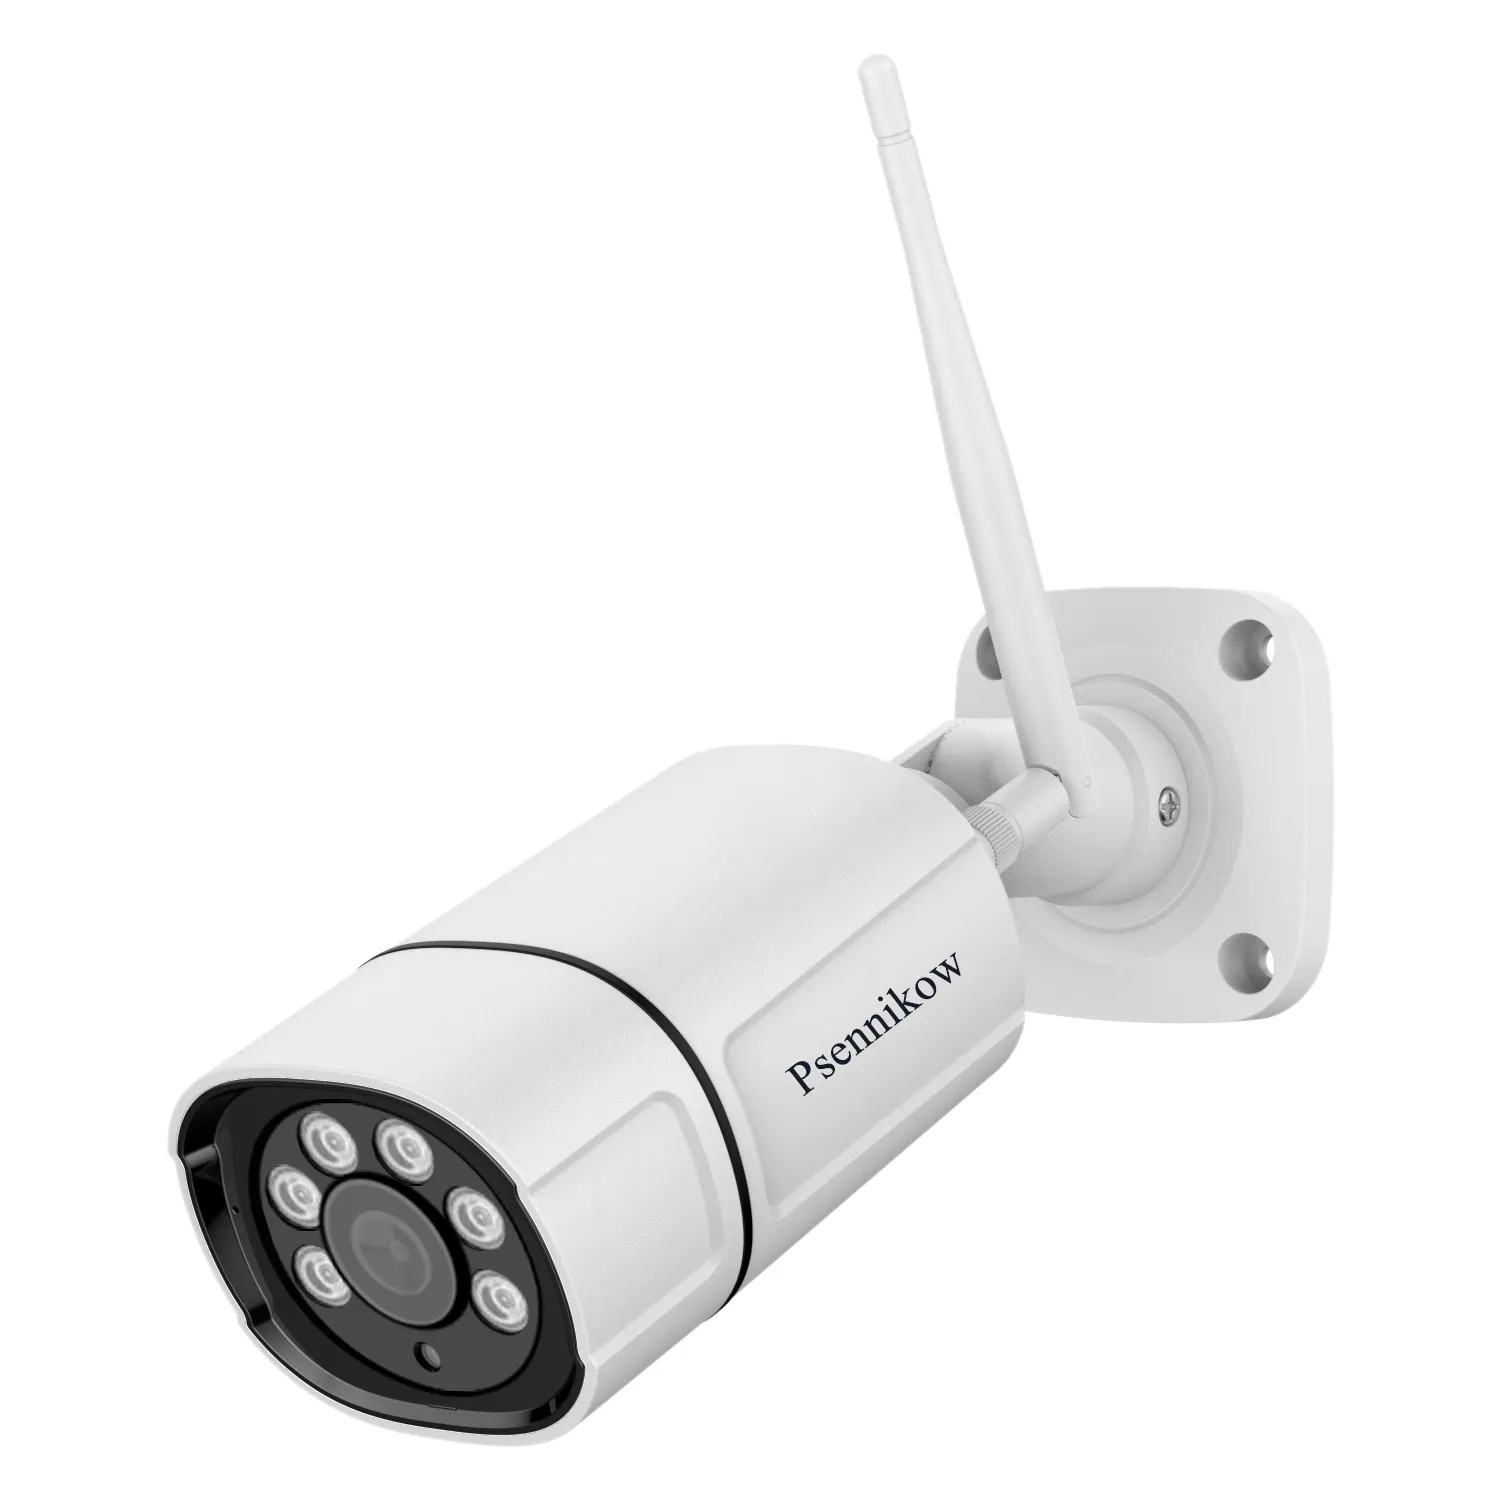 WiFi IP kamera 1080P 2.0MP IR iki yönlü ses kablosuz gözetim açık CCTV Bullet kamera Metal P2P